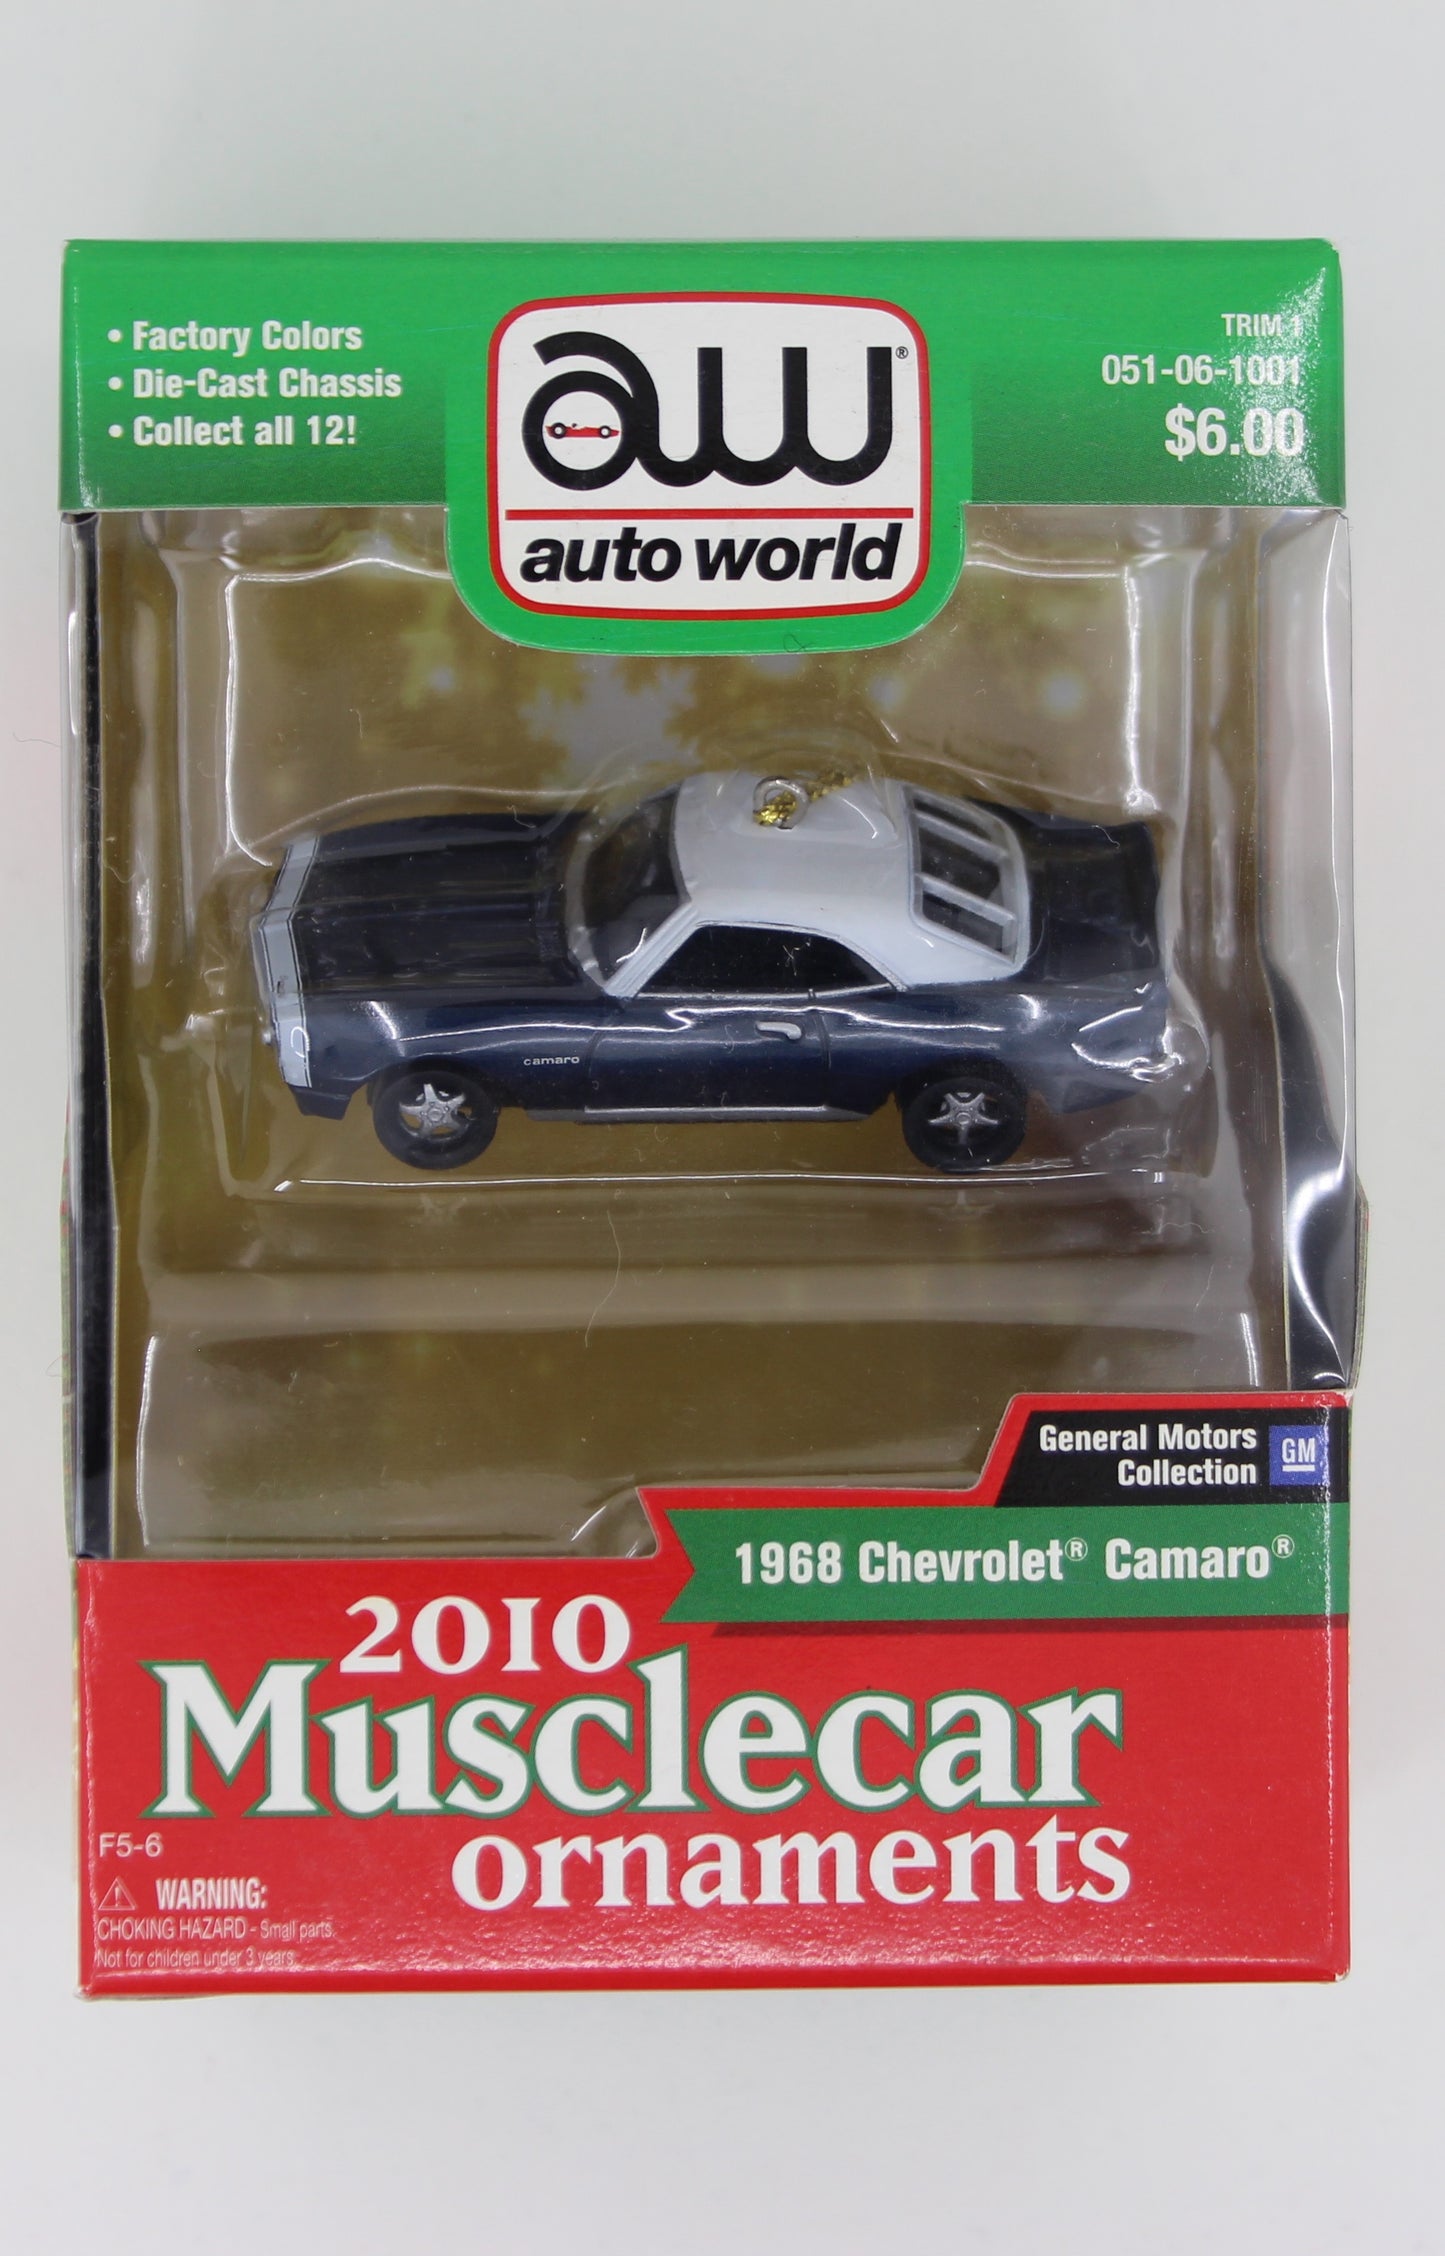 Auto World 2010 Musclecar Ornament 1968 Chevrolet Camaro